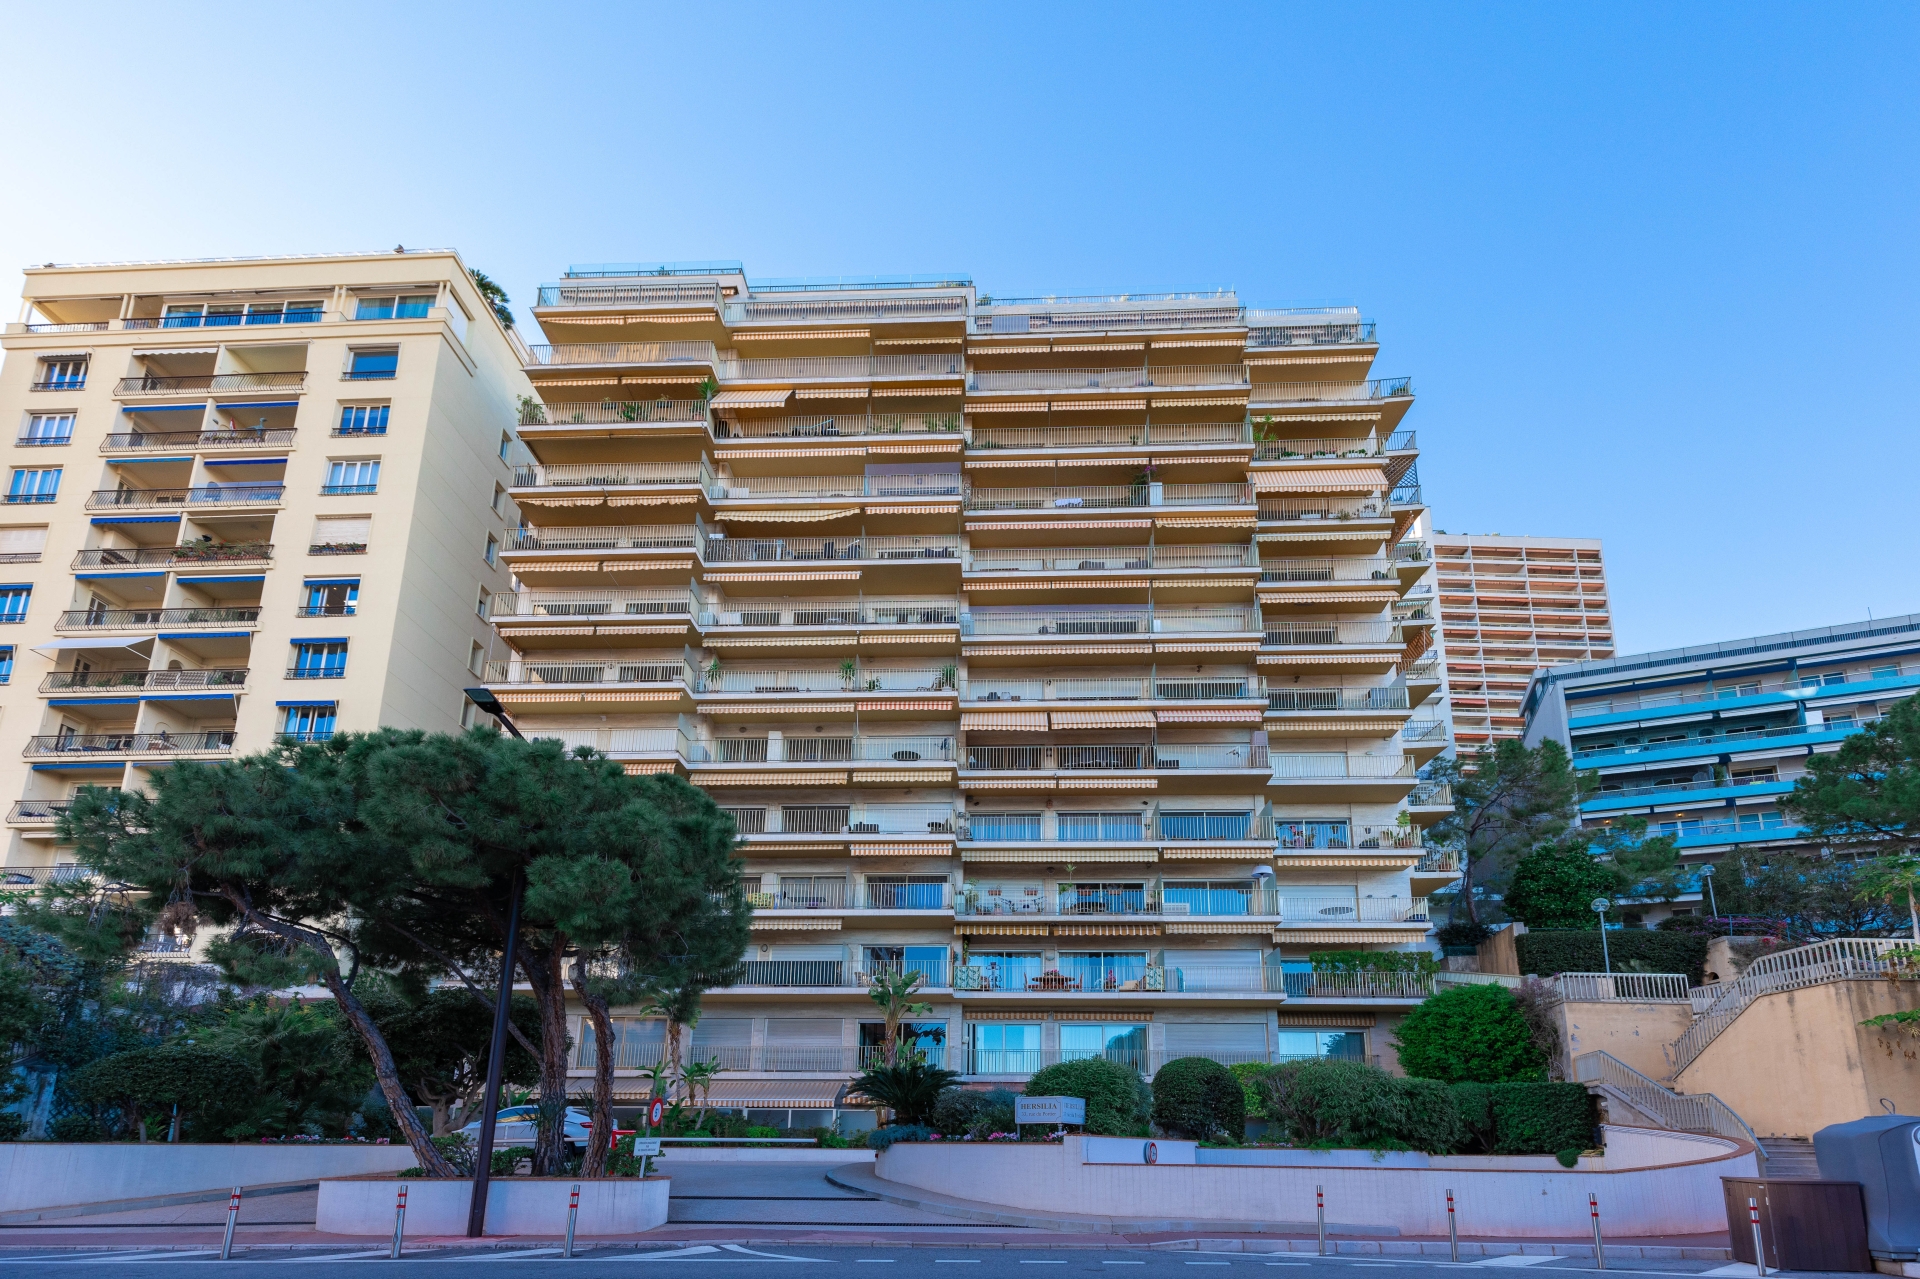 Dotta Appartement de 3 pieces a vendre - HERSILIA - Larvotto - Monaco - img074a8880